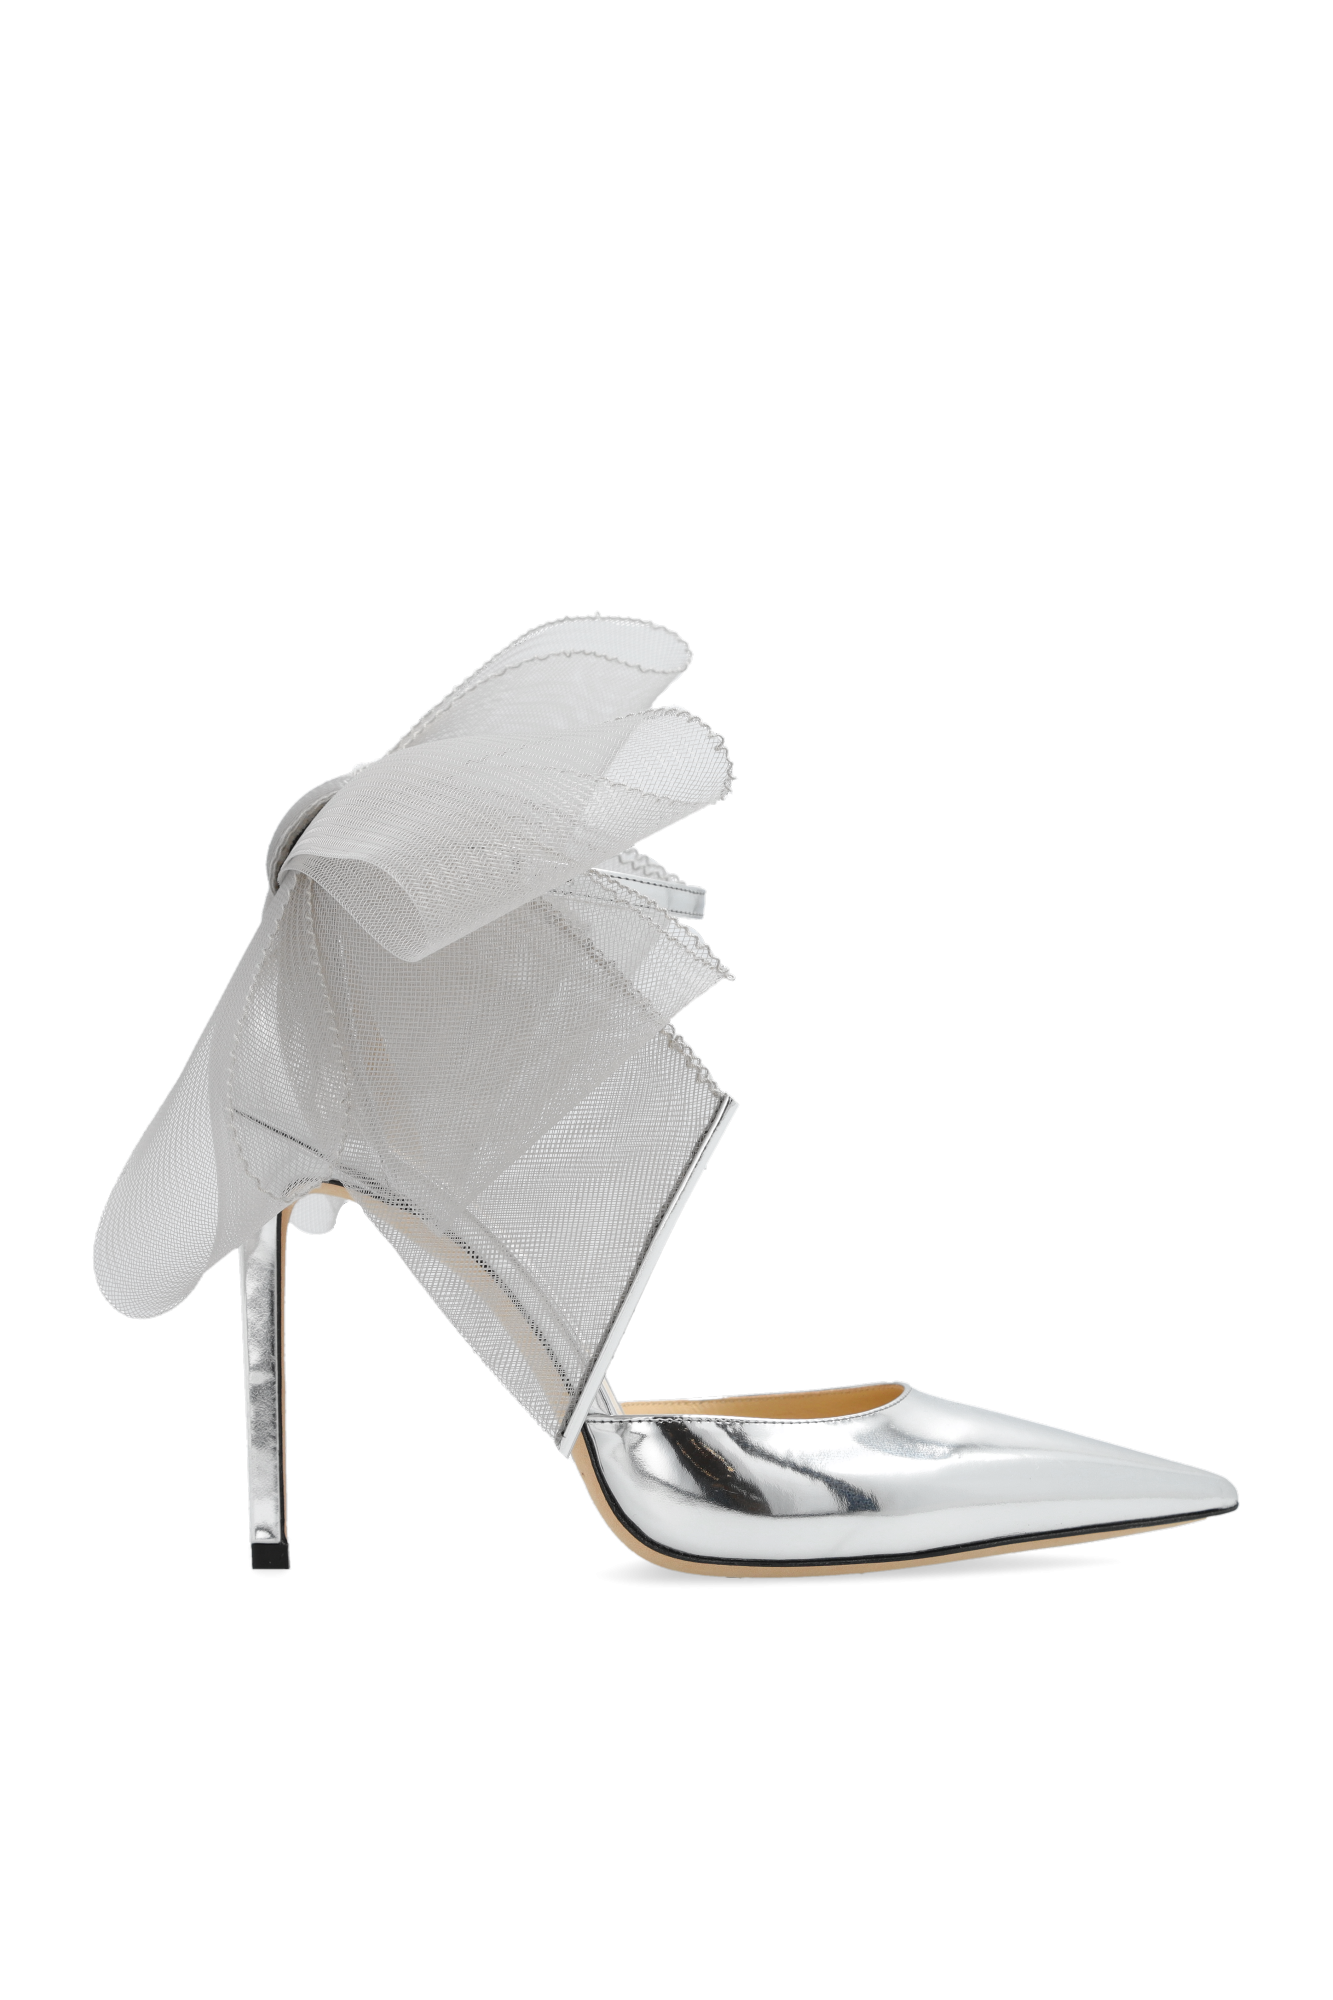 Louis Vuitton Silhouette Sandals - Vitkac shop online